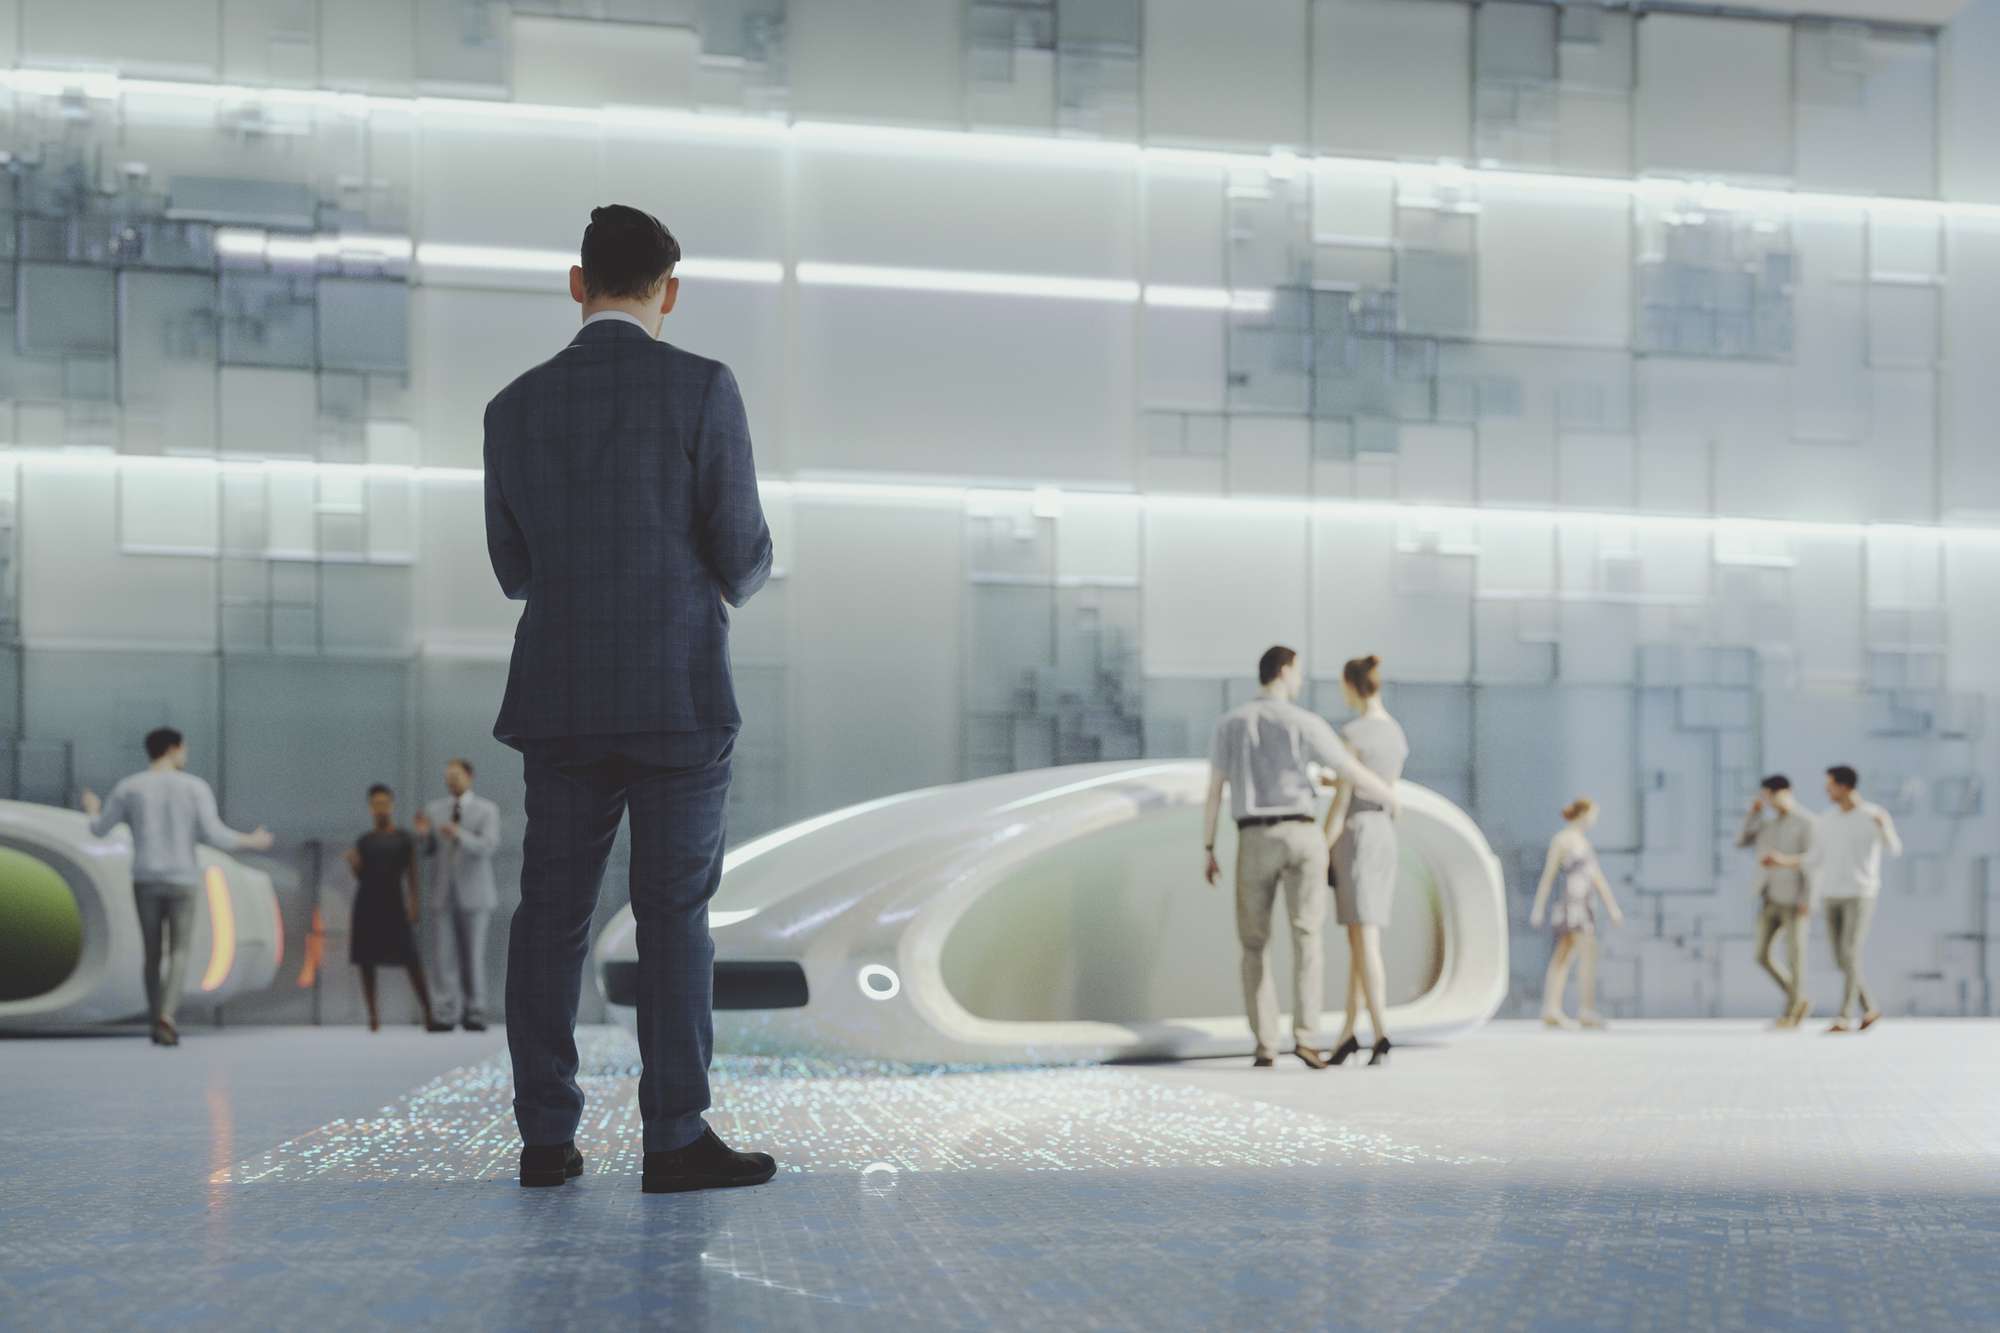 Een concept van een futuristische straat met rondlopende mensen en elektrische voertuigen voor transport.